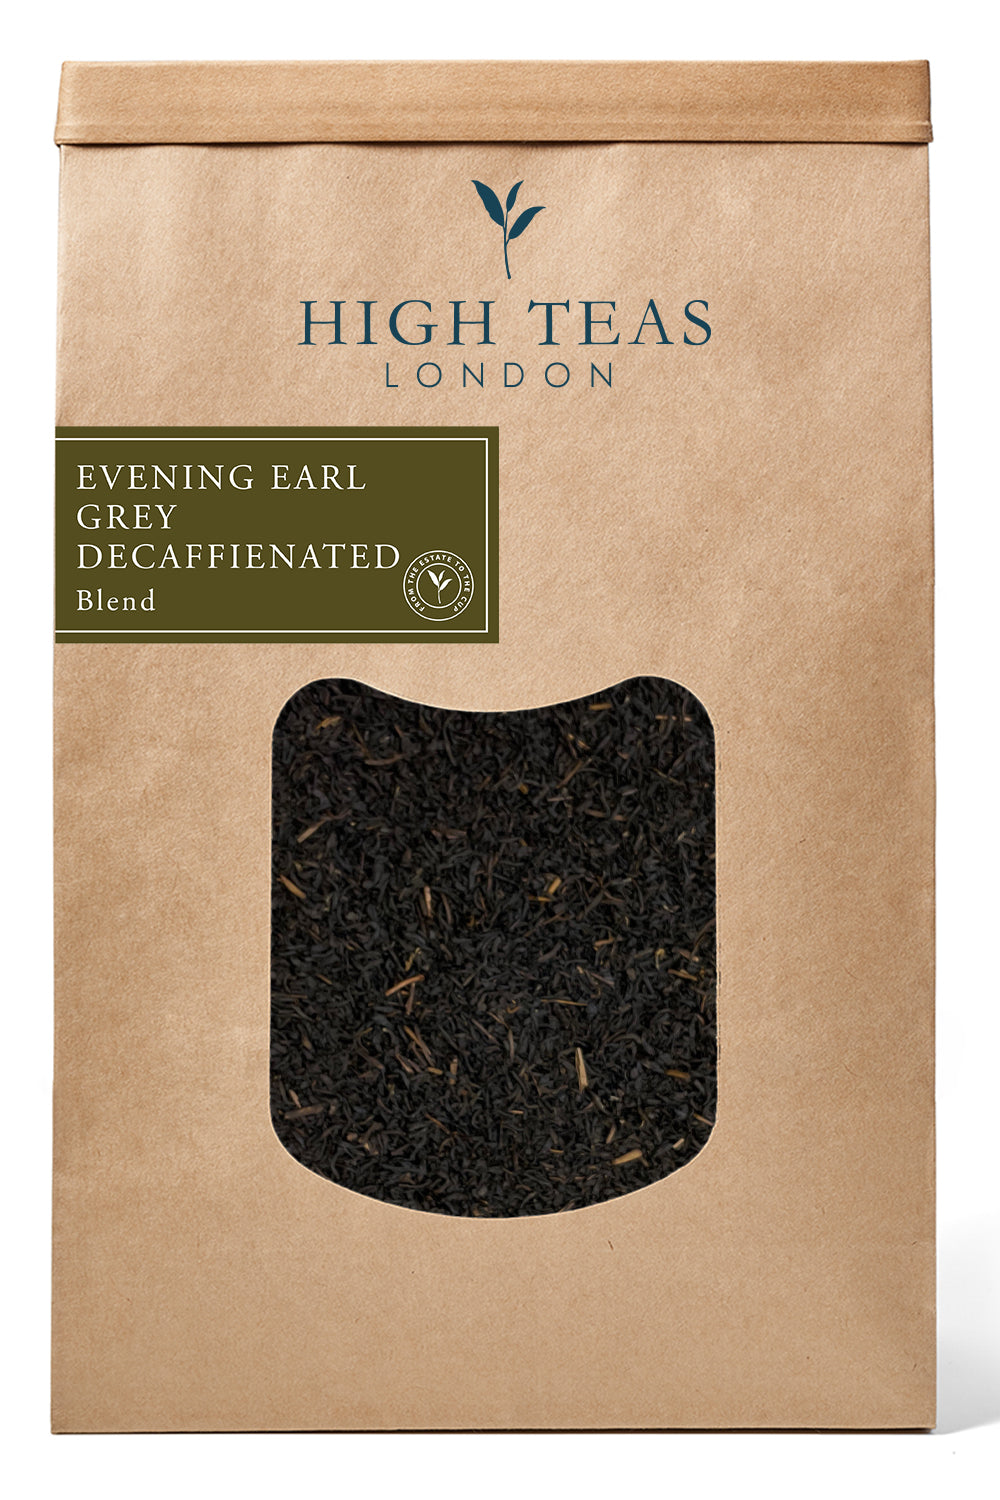 Evening Earl Grey Decaffeinated Leaf-500g-Loose Leaf Tea-High Teas